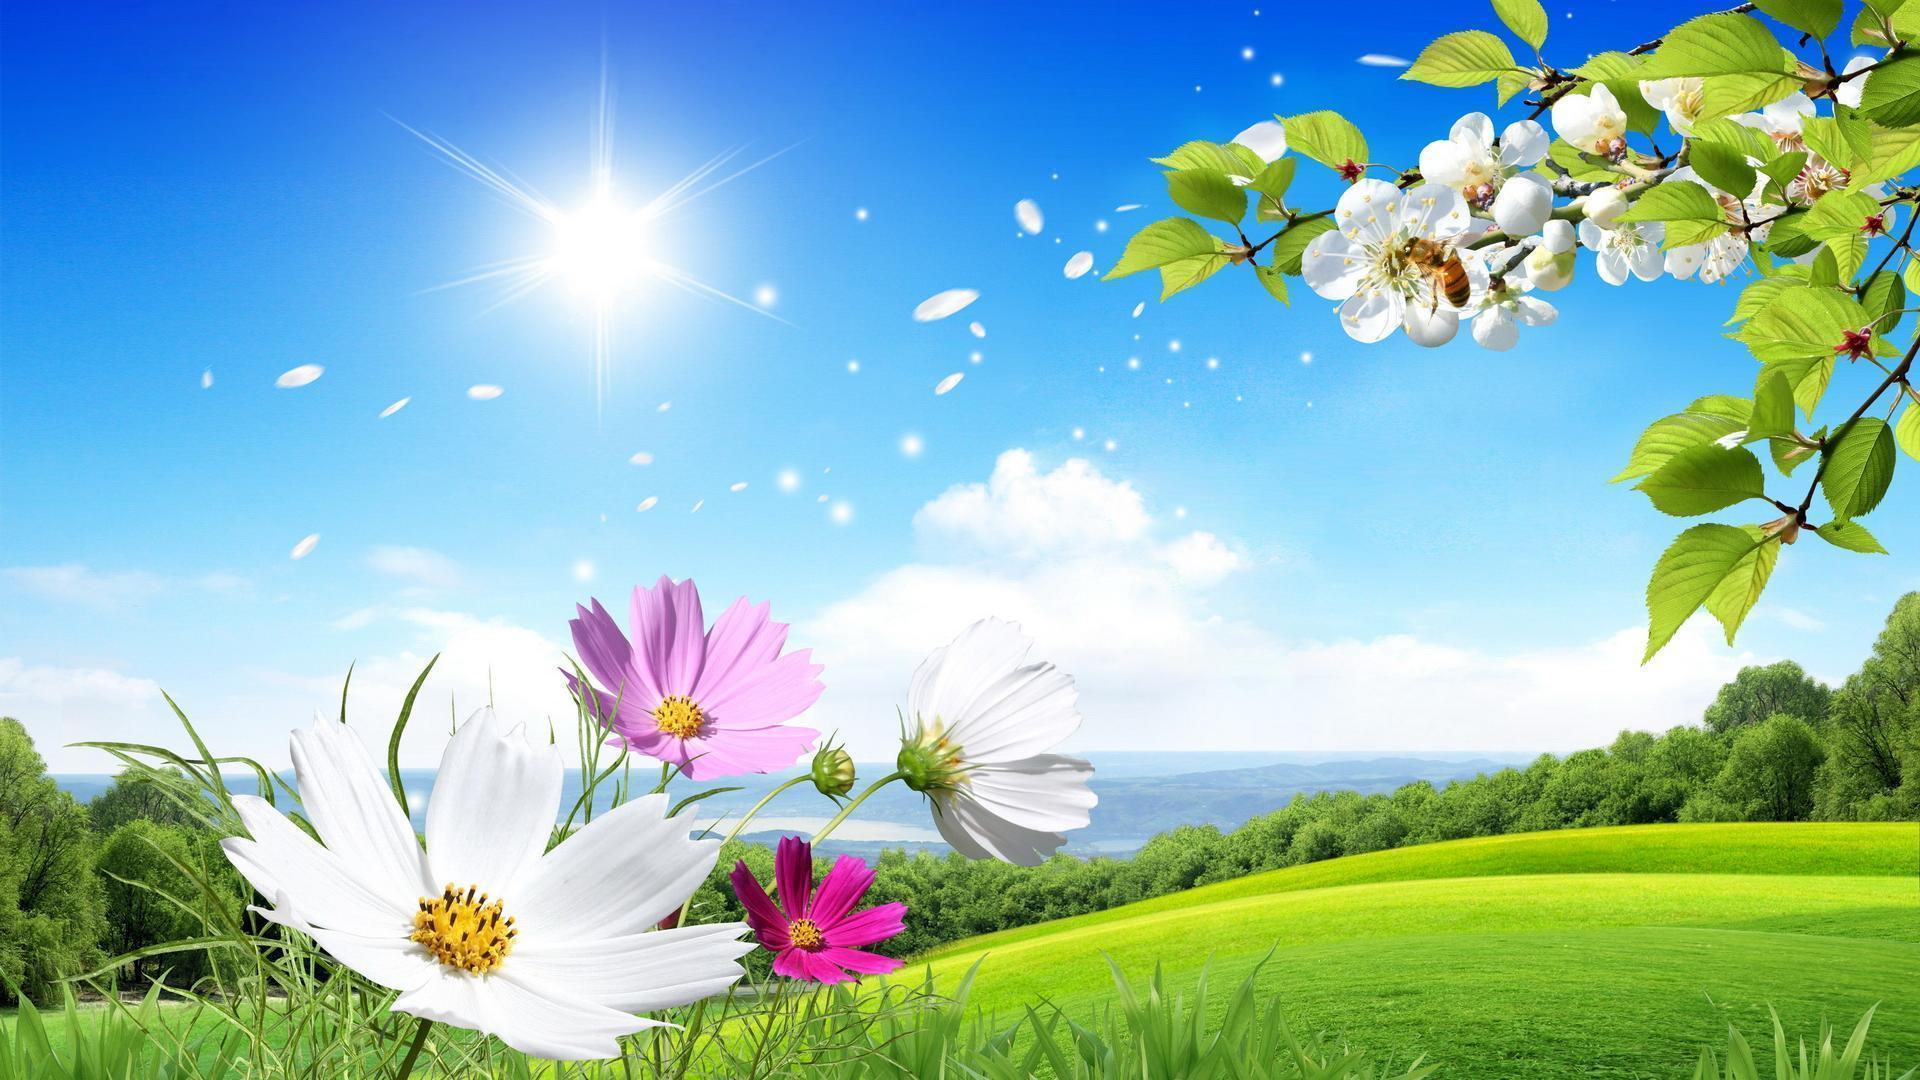 HD Summer Flowers Scenery Desktop Wallpaper